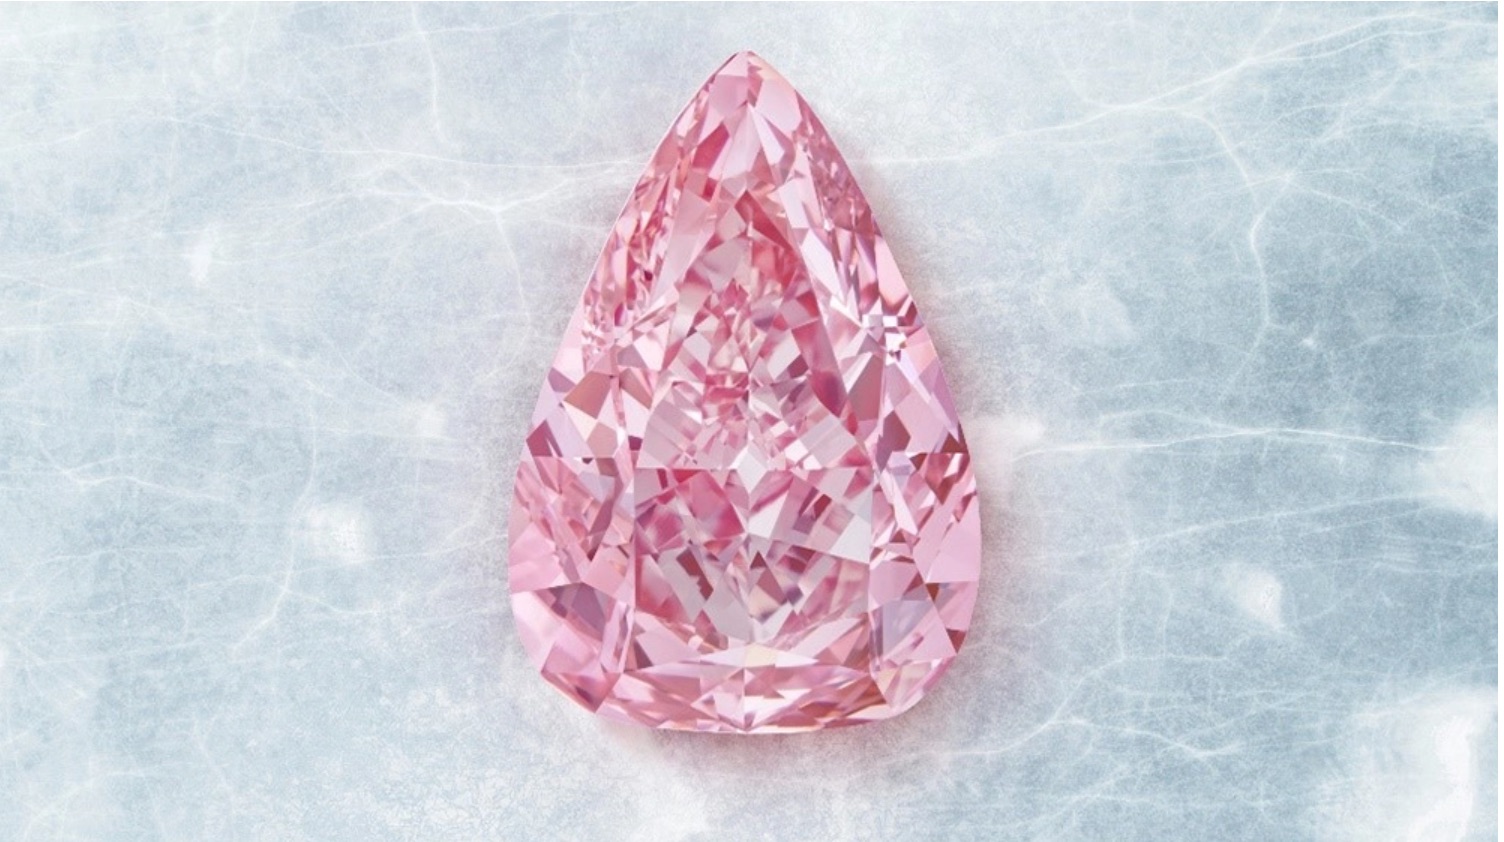 Bí mật về viên kim cương hồng may mắn sắp đem về 800 tỷ đồng ở cuộc đấu giá sắp tới - 1